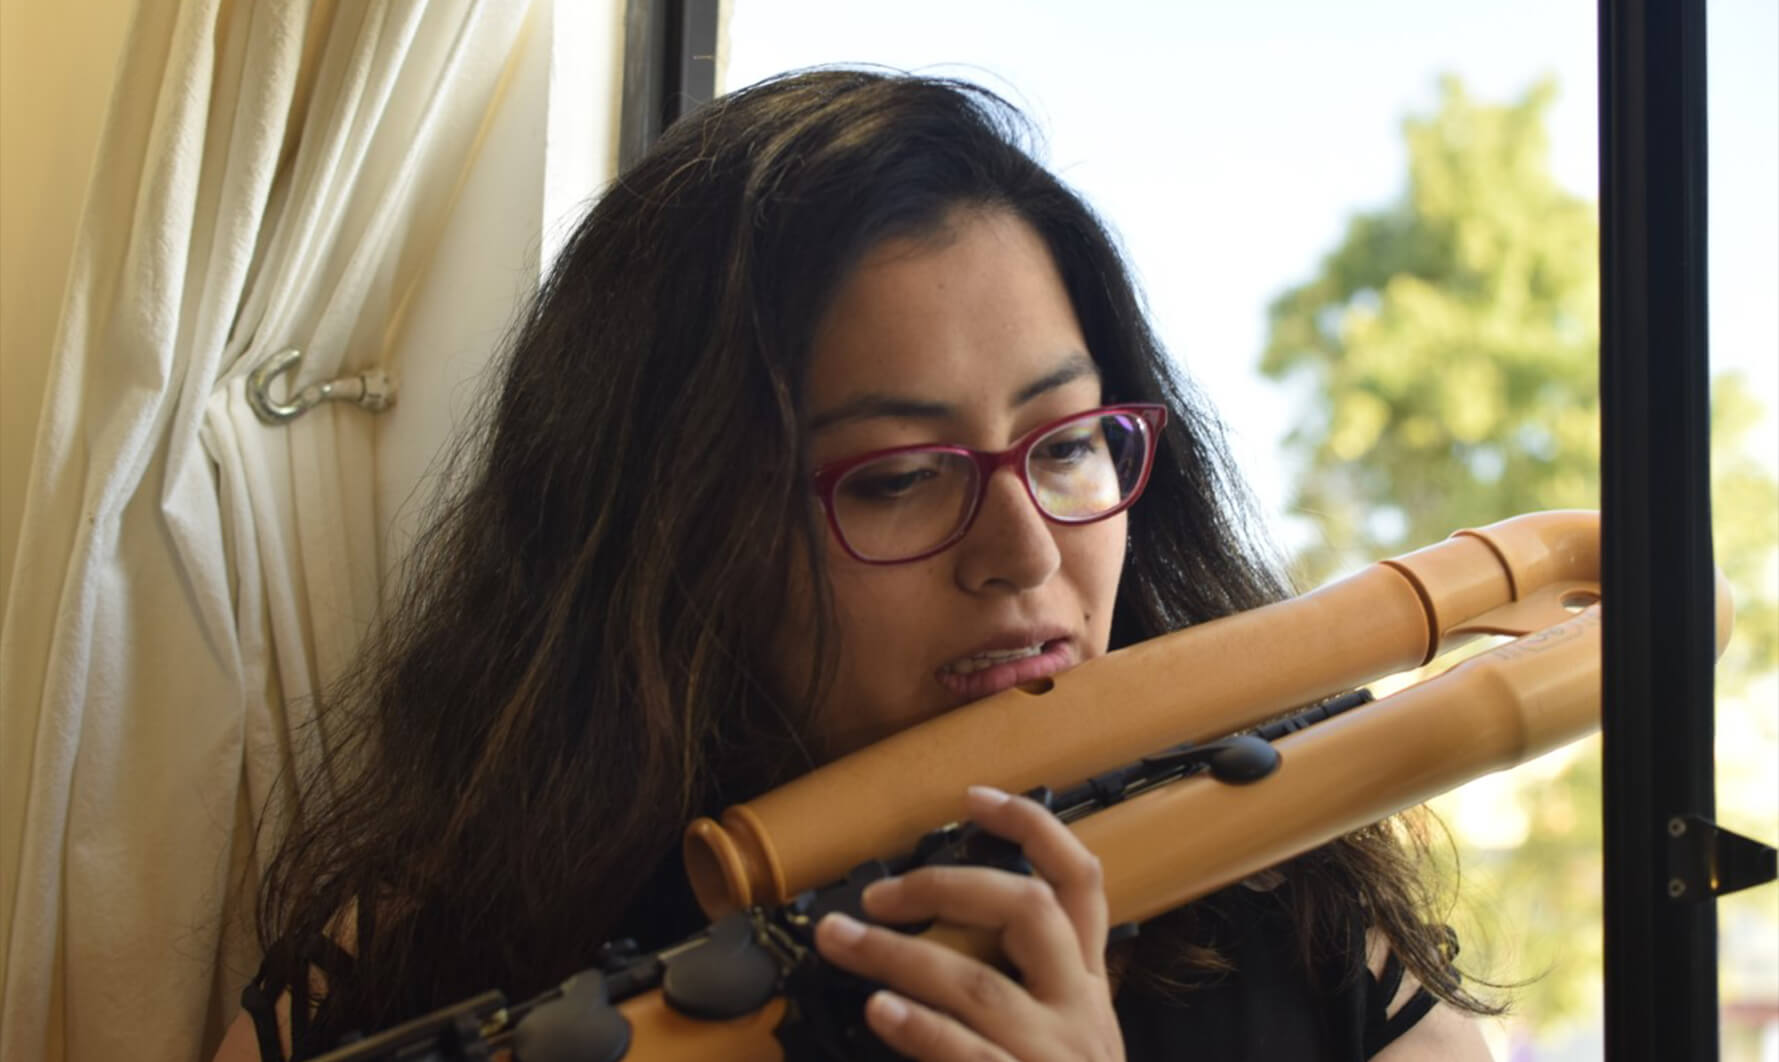 Laura Cubides, flauta, Colombia - Círculo Colombiano de Música Contemporánea